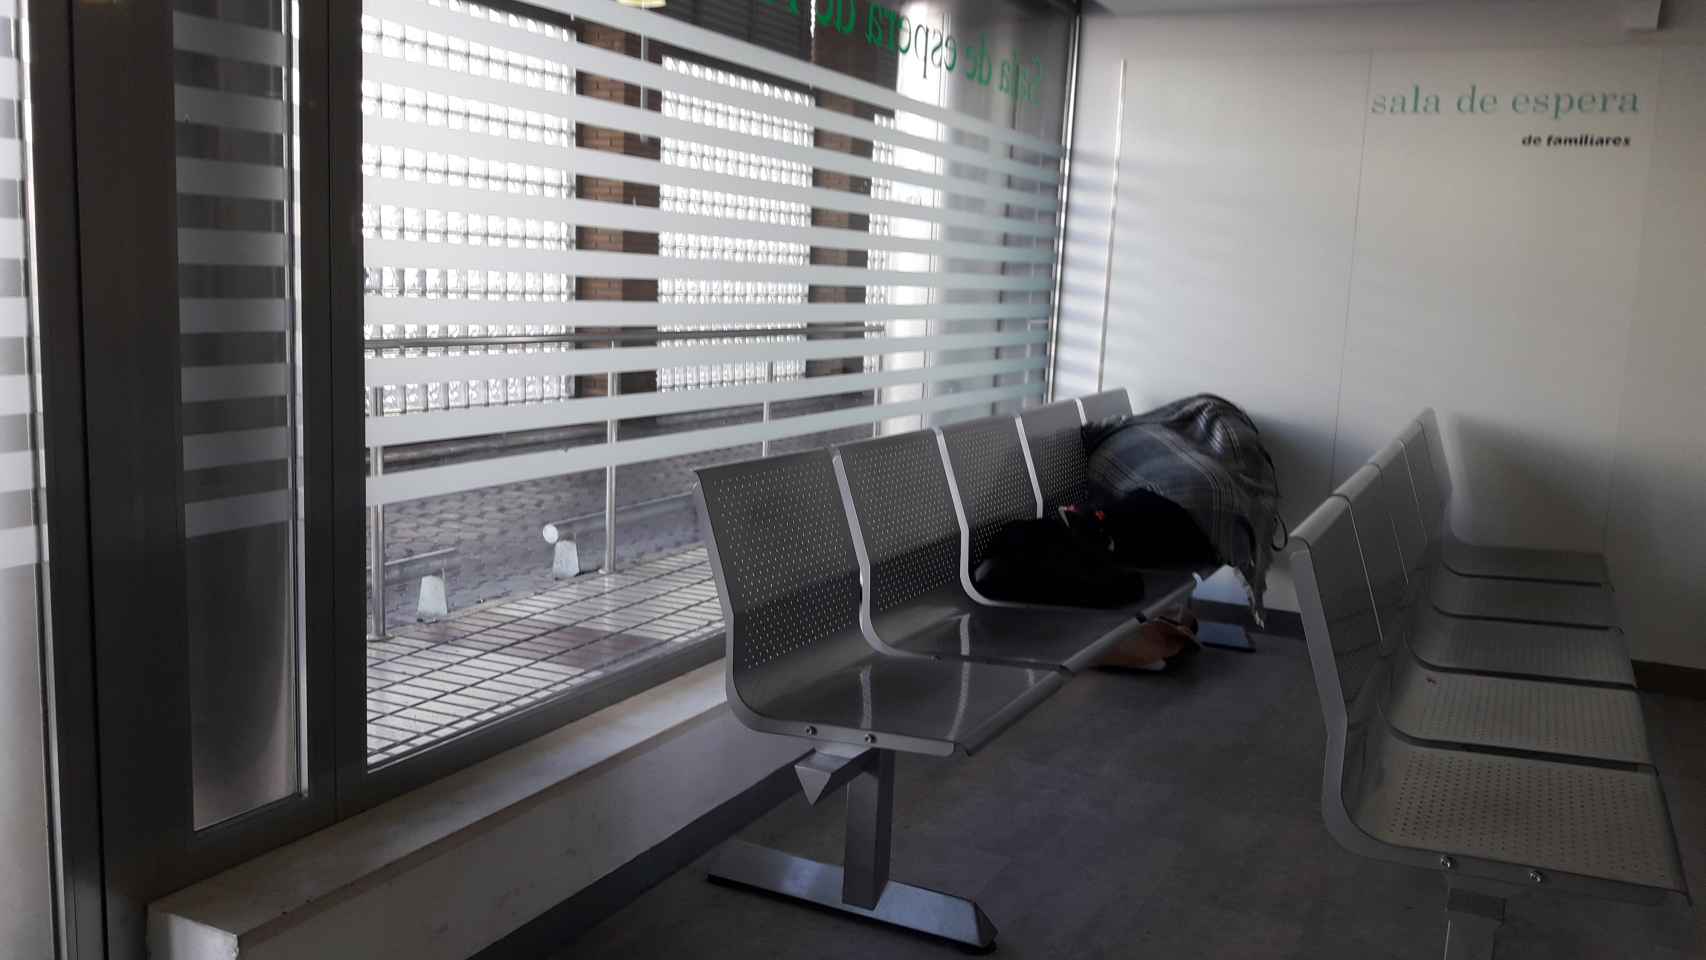 Zona de la sala de espera de Urgencias del hospital Virgen Macarena donde ocurrió la supuesta violación